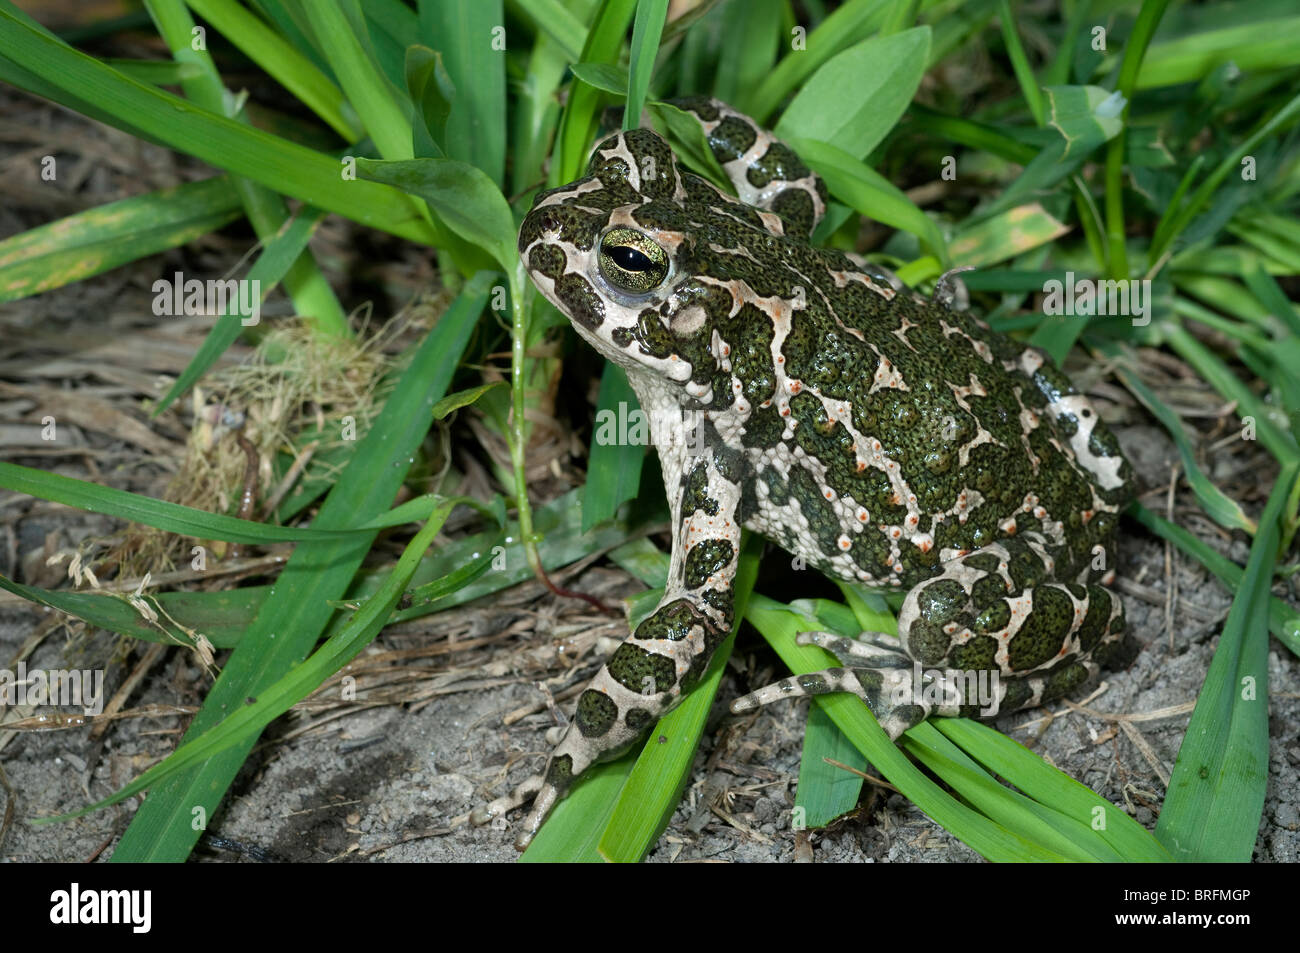 European Green Toad (Bufo viridis) on soil near grass. Stock Photo